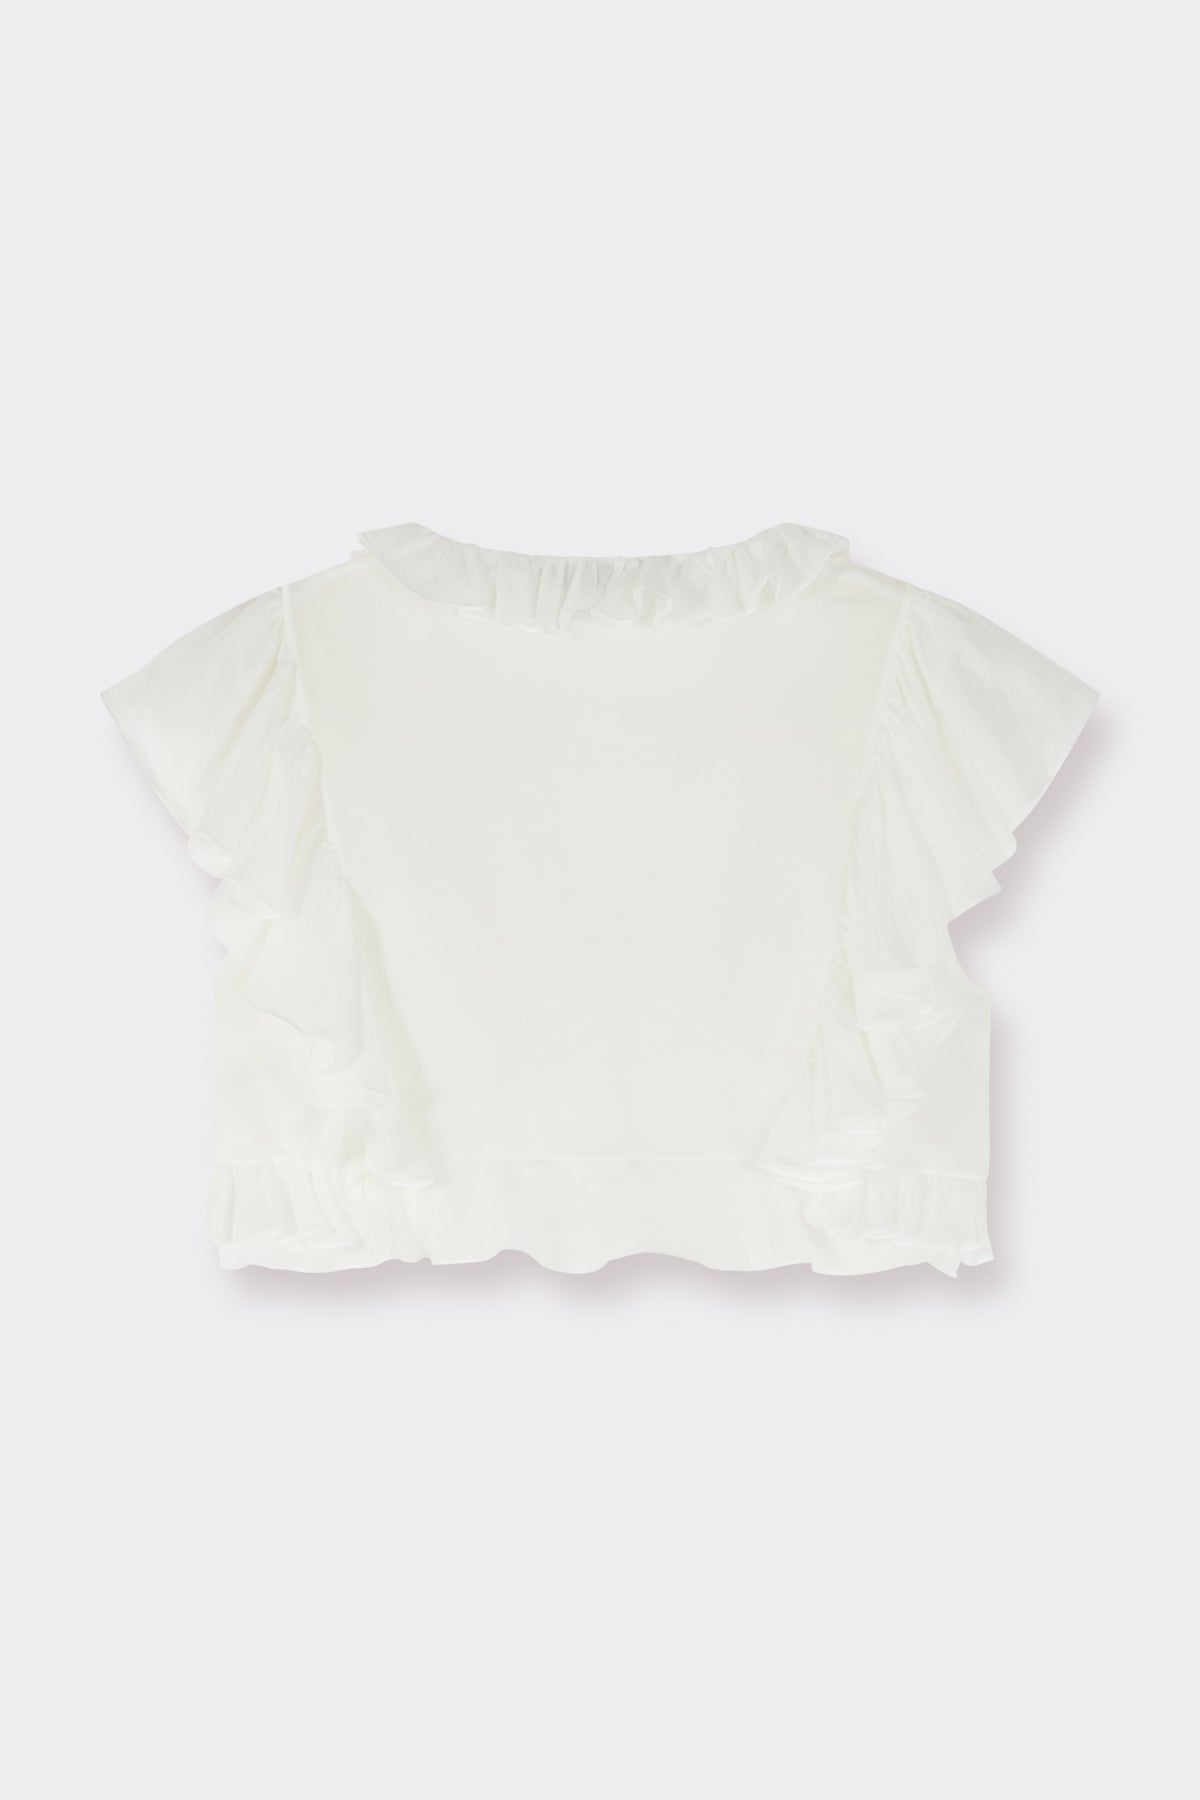 Kaya Top in Soft White | Noon By Noor